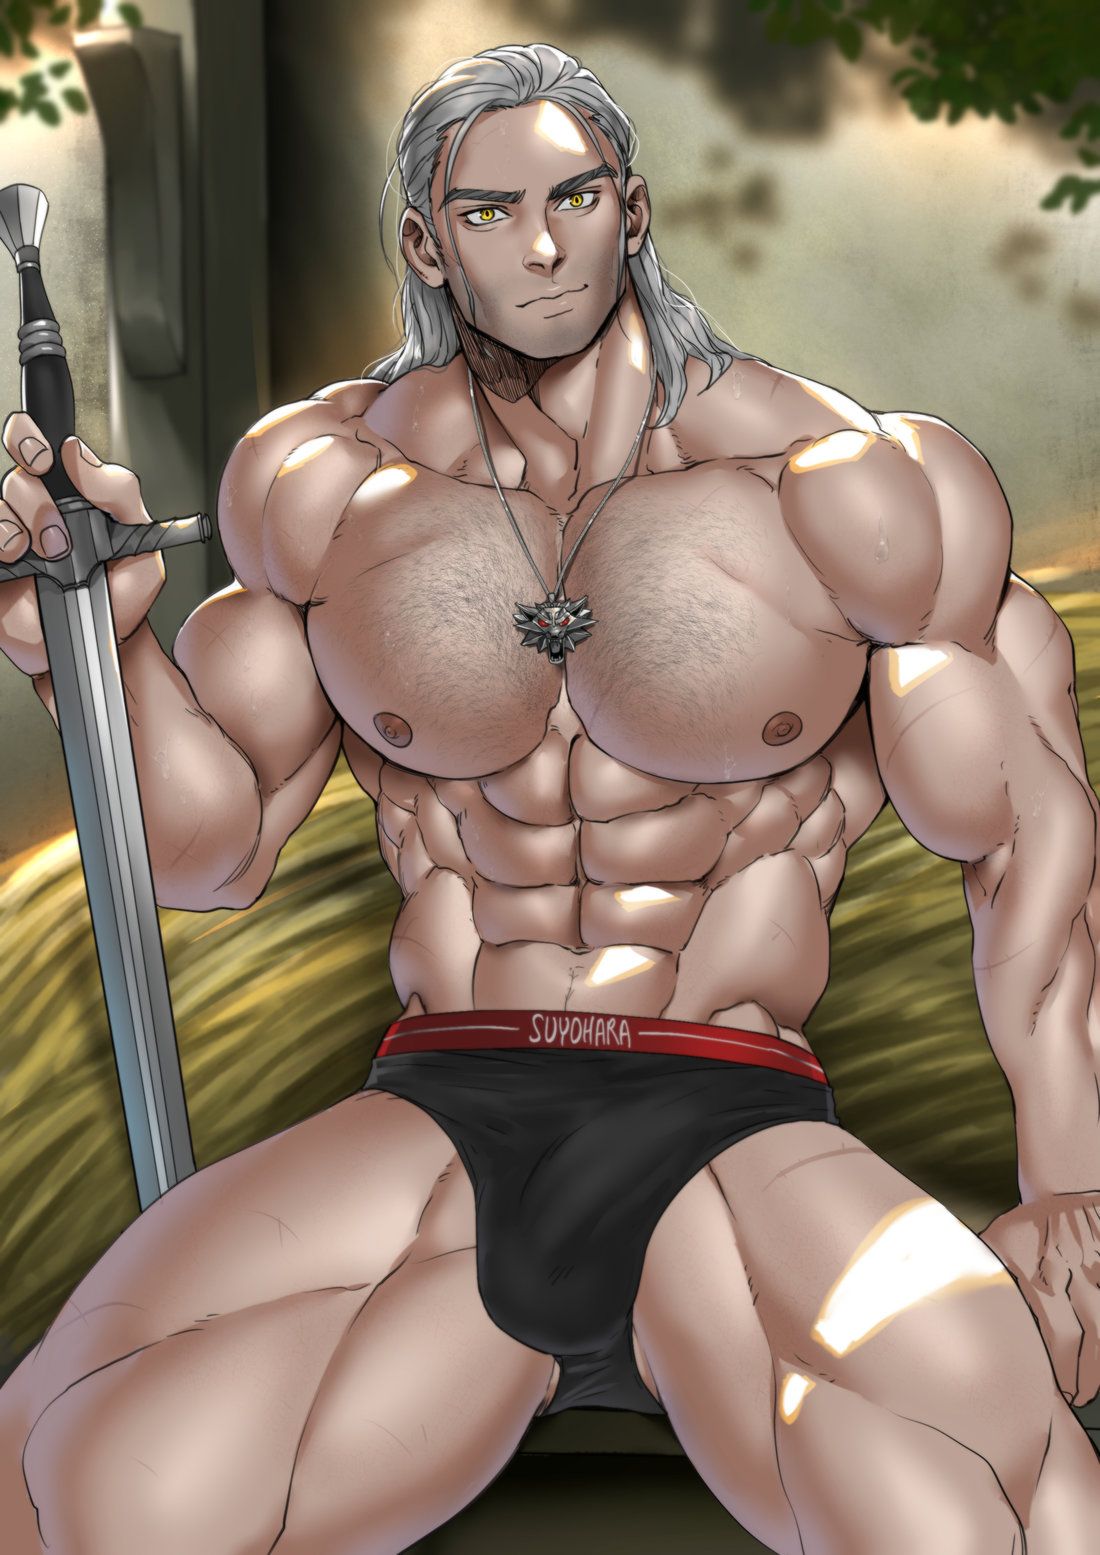 Geralt Of Rivia Gay Porn - Suyohara] Geralt of Rivia - Gay Manga - HD Porn Comics